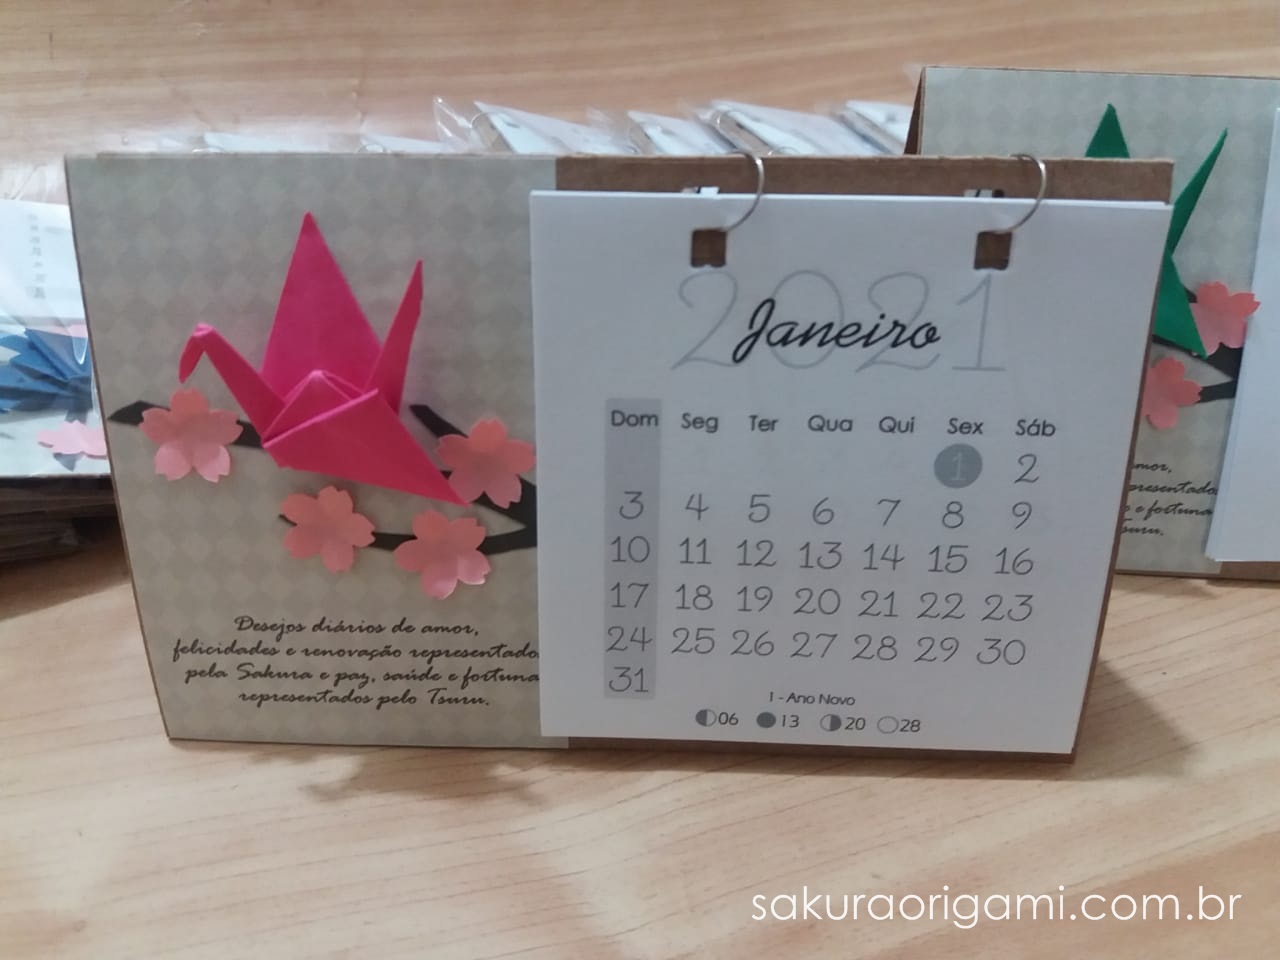 Arquivo de lembrancinhas de natal - Sakura Origami Ateliê